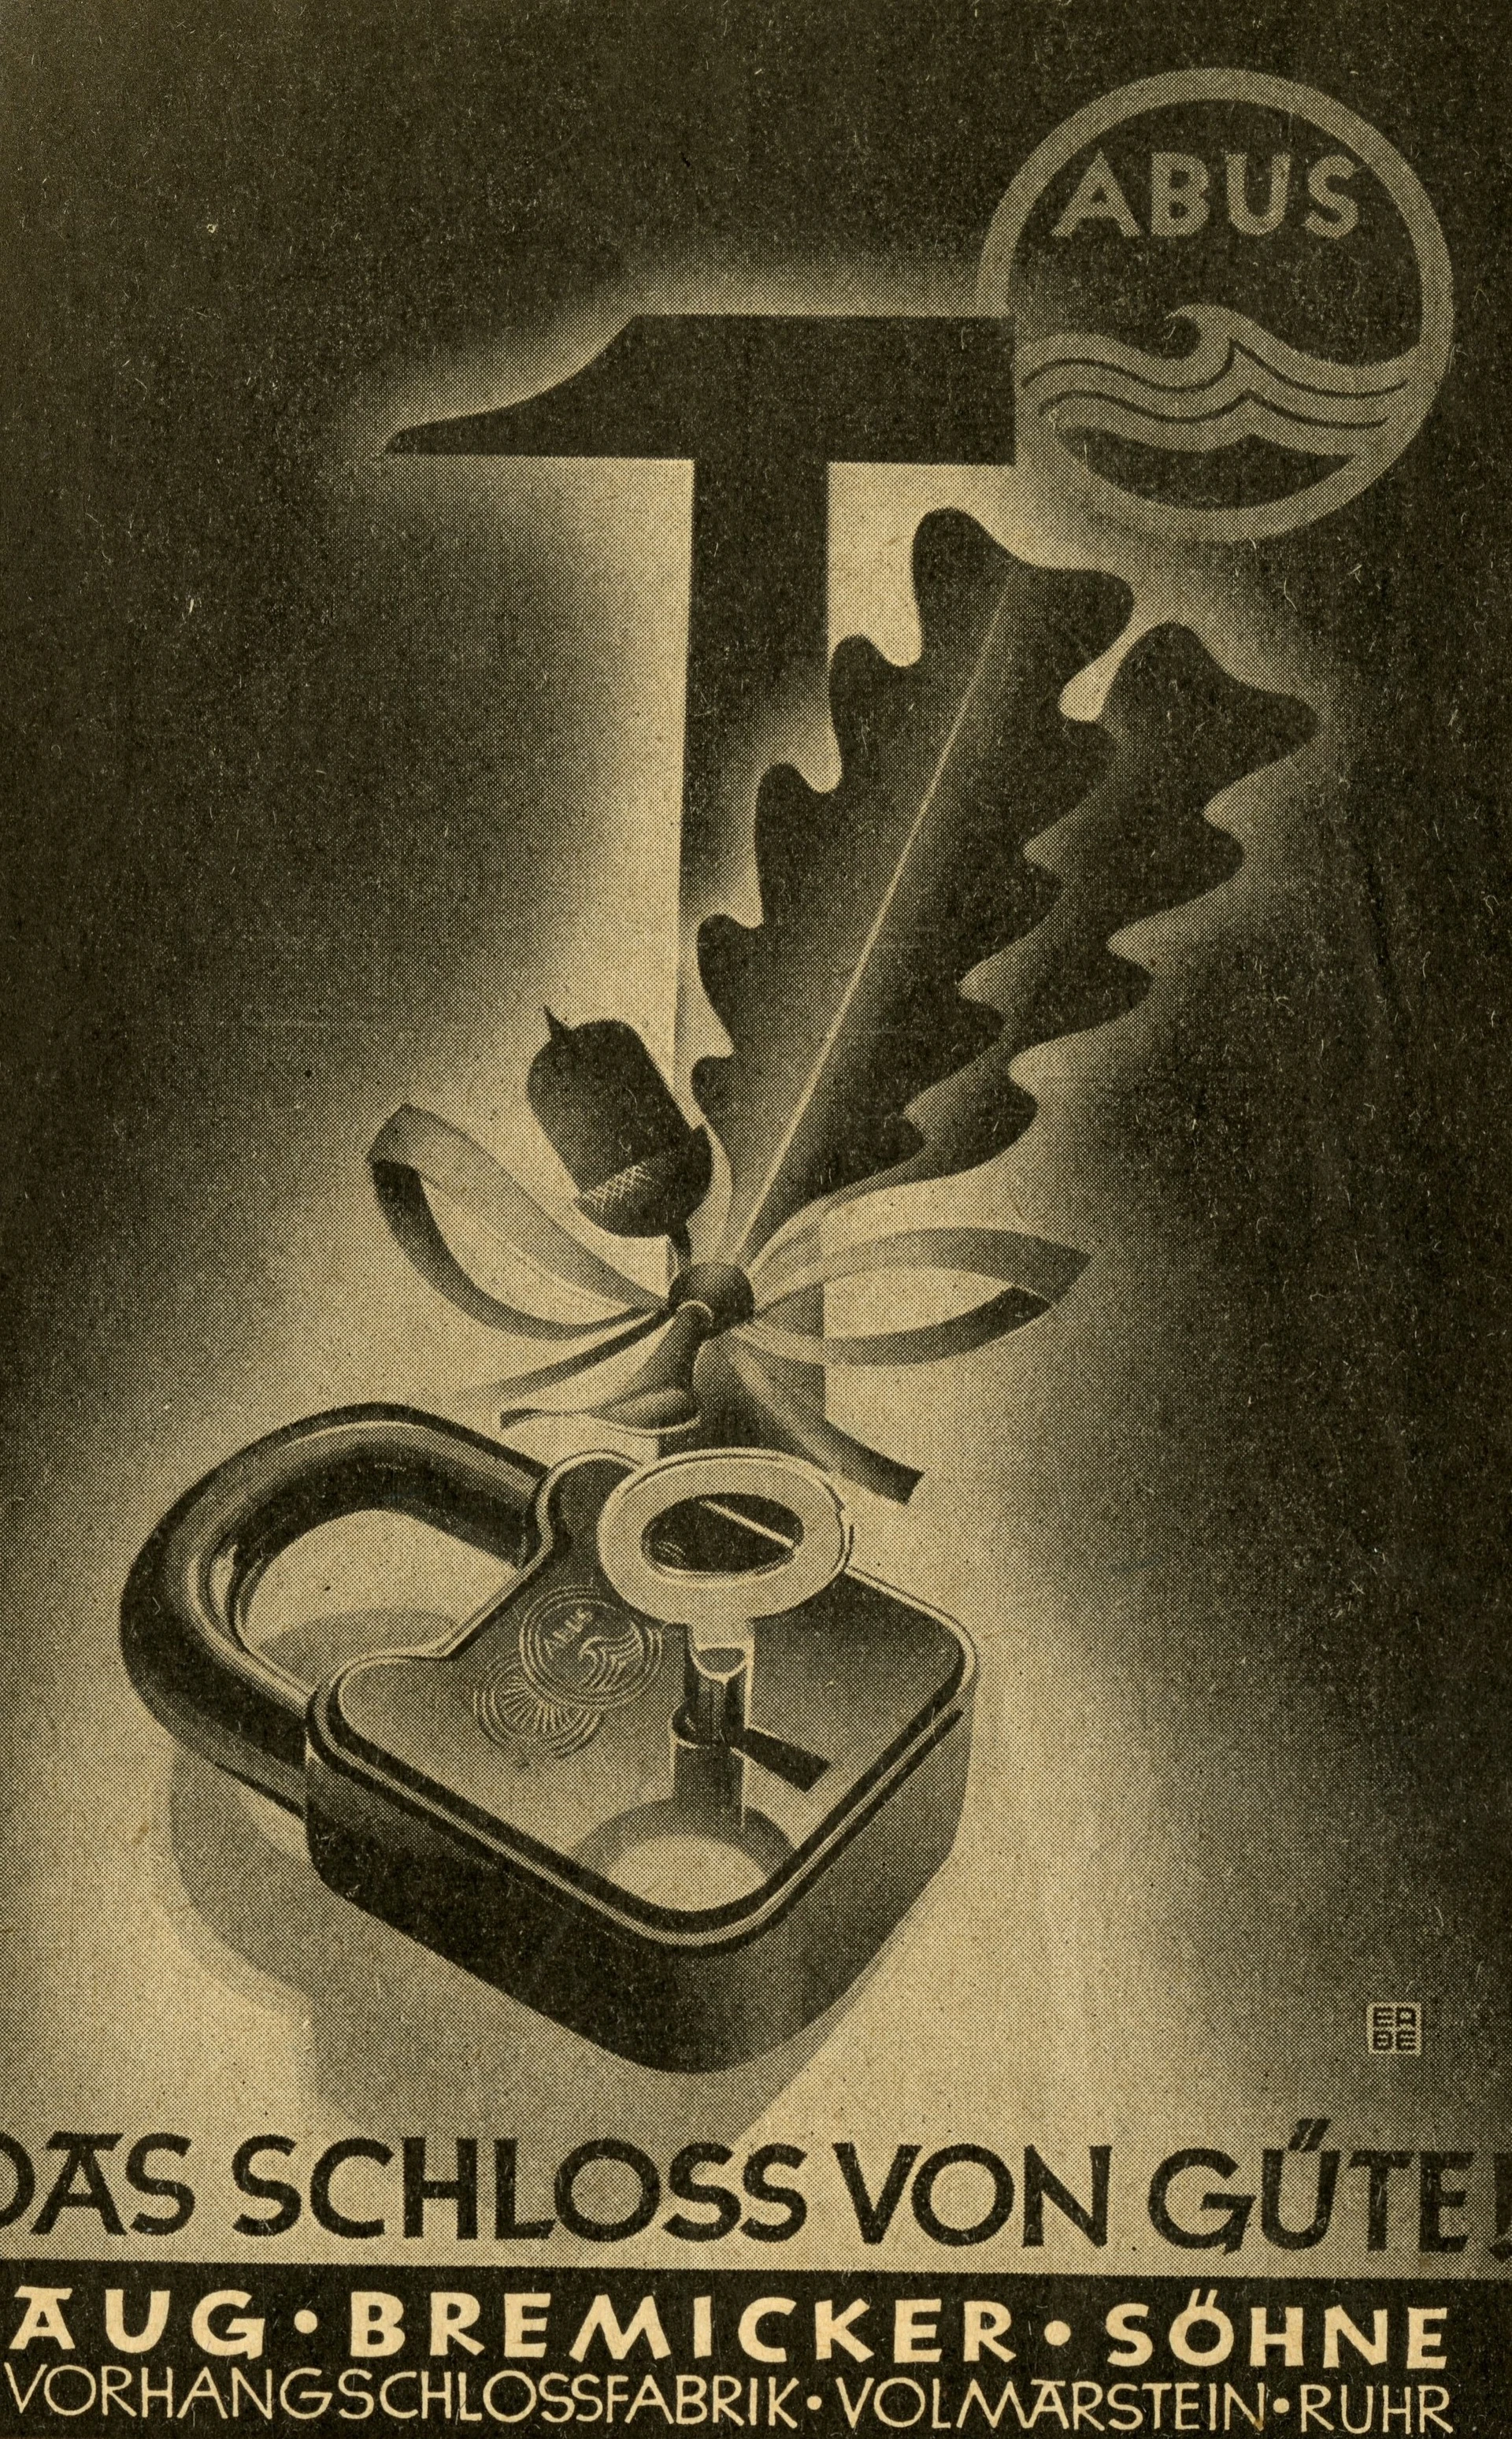 En mörk affisch som föreställer ett hänglås tillsammans med en ekollonkvist och en hammare, med texten "Das Schloss von Güte!” (Låset med kvalitet!) © ABUS